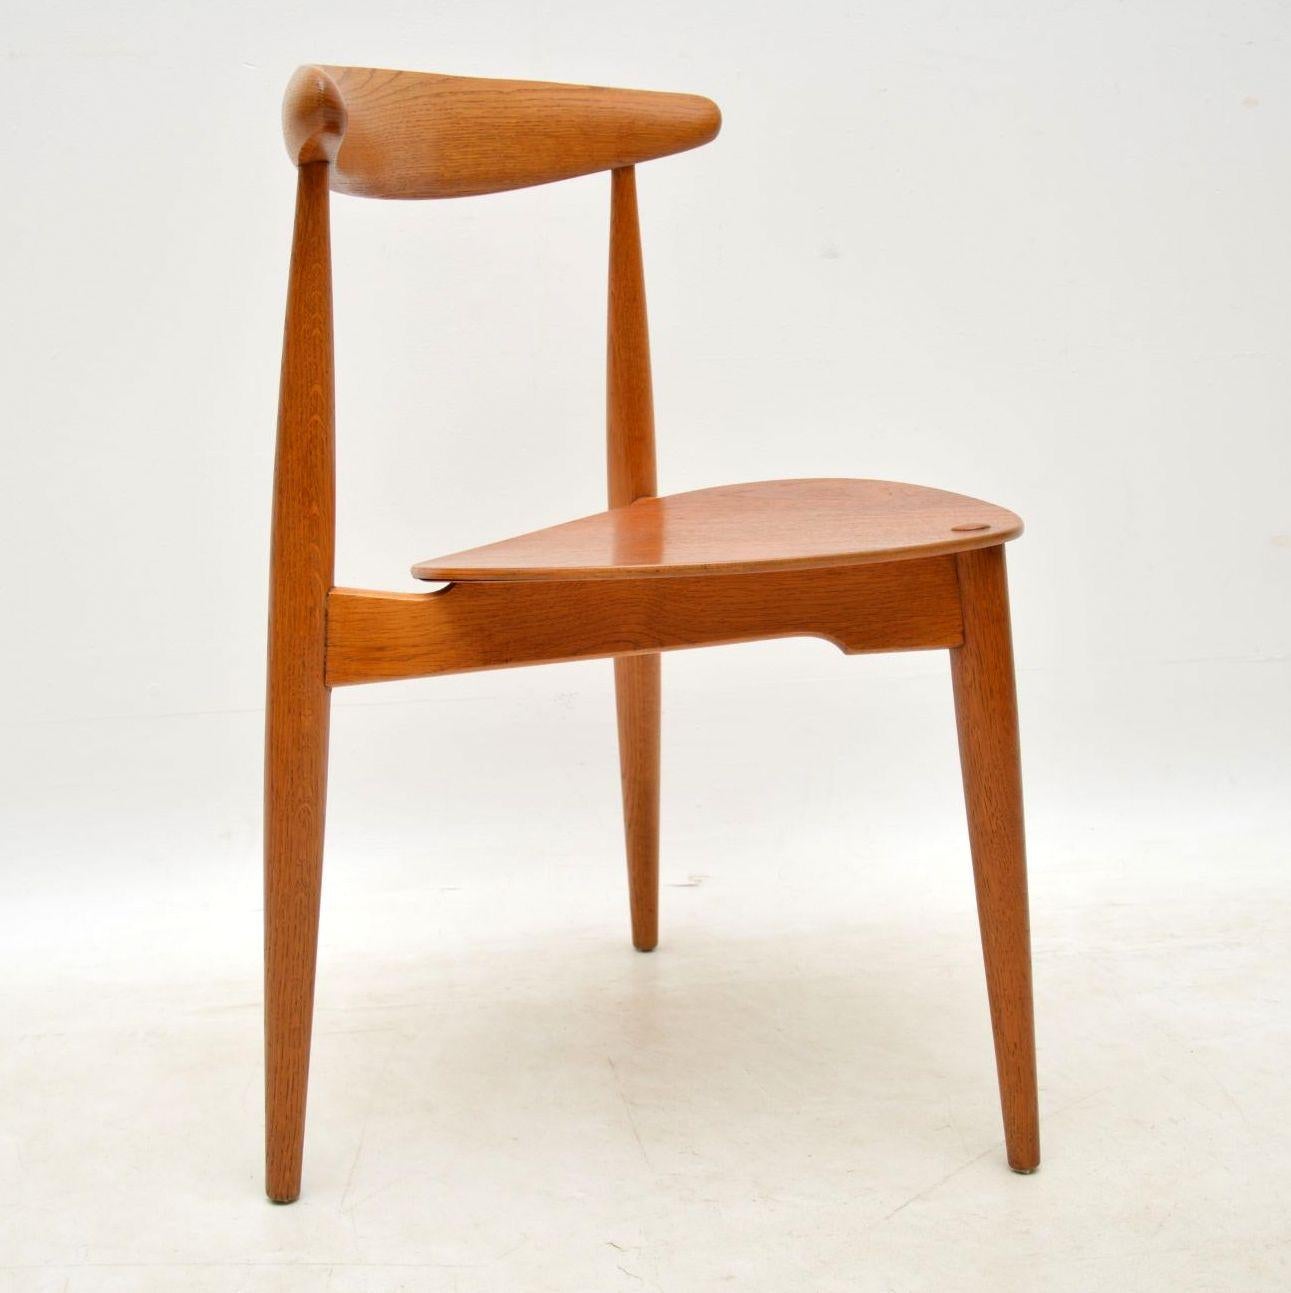 1950s Danish Teak & Oak Dining Table & Chairs by Hans Wegner for Fritz Hansen 7